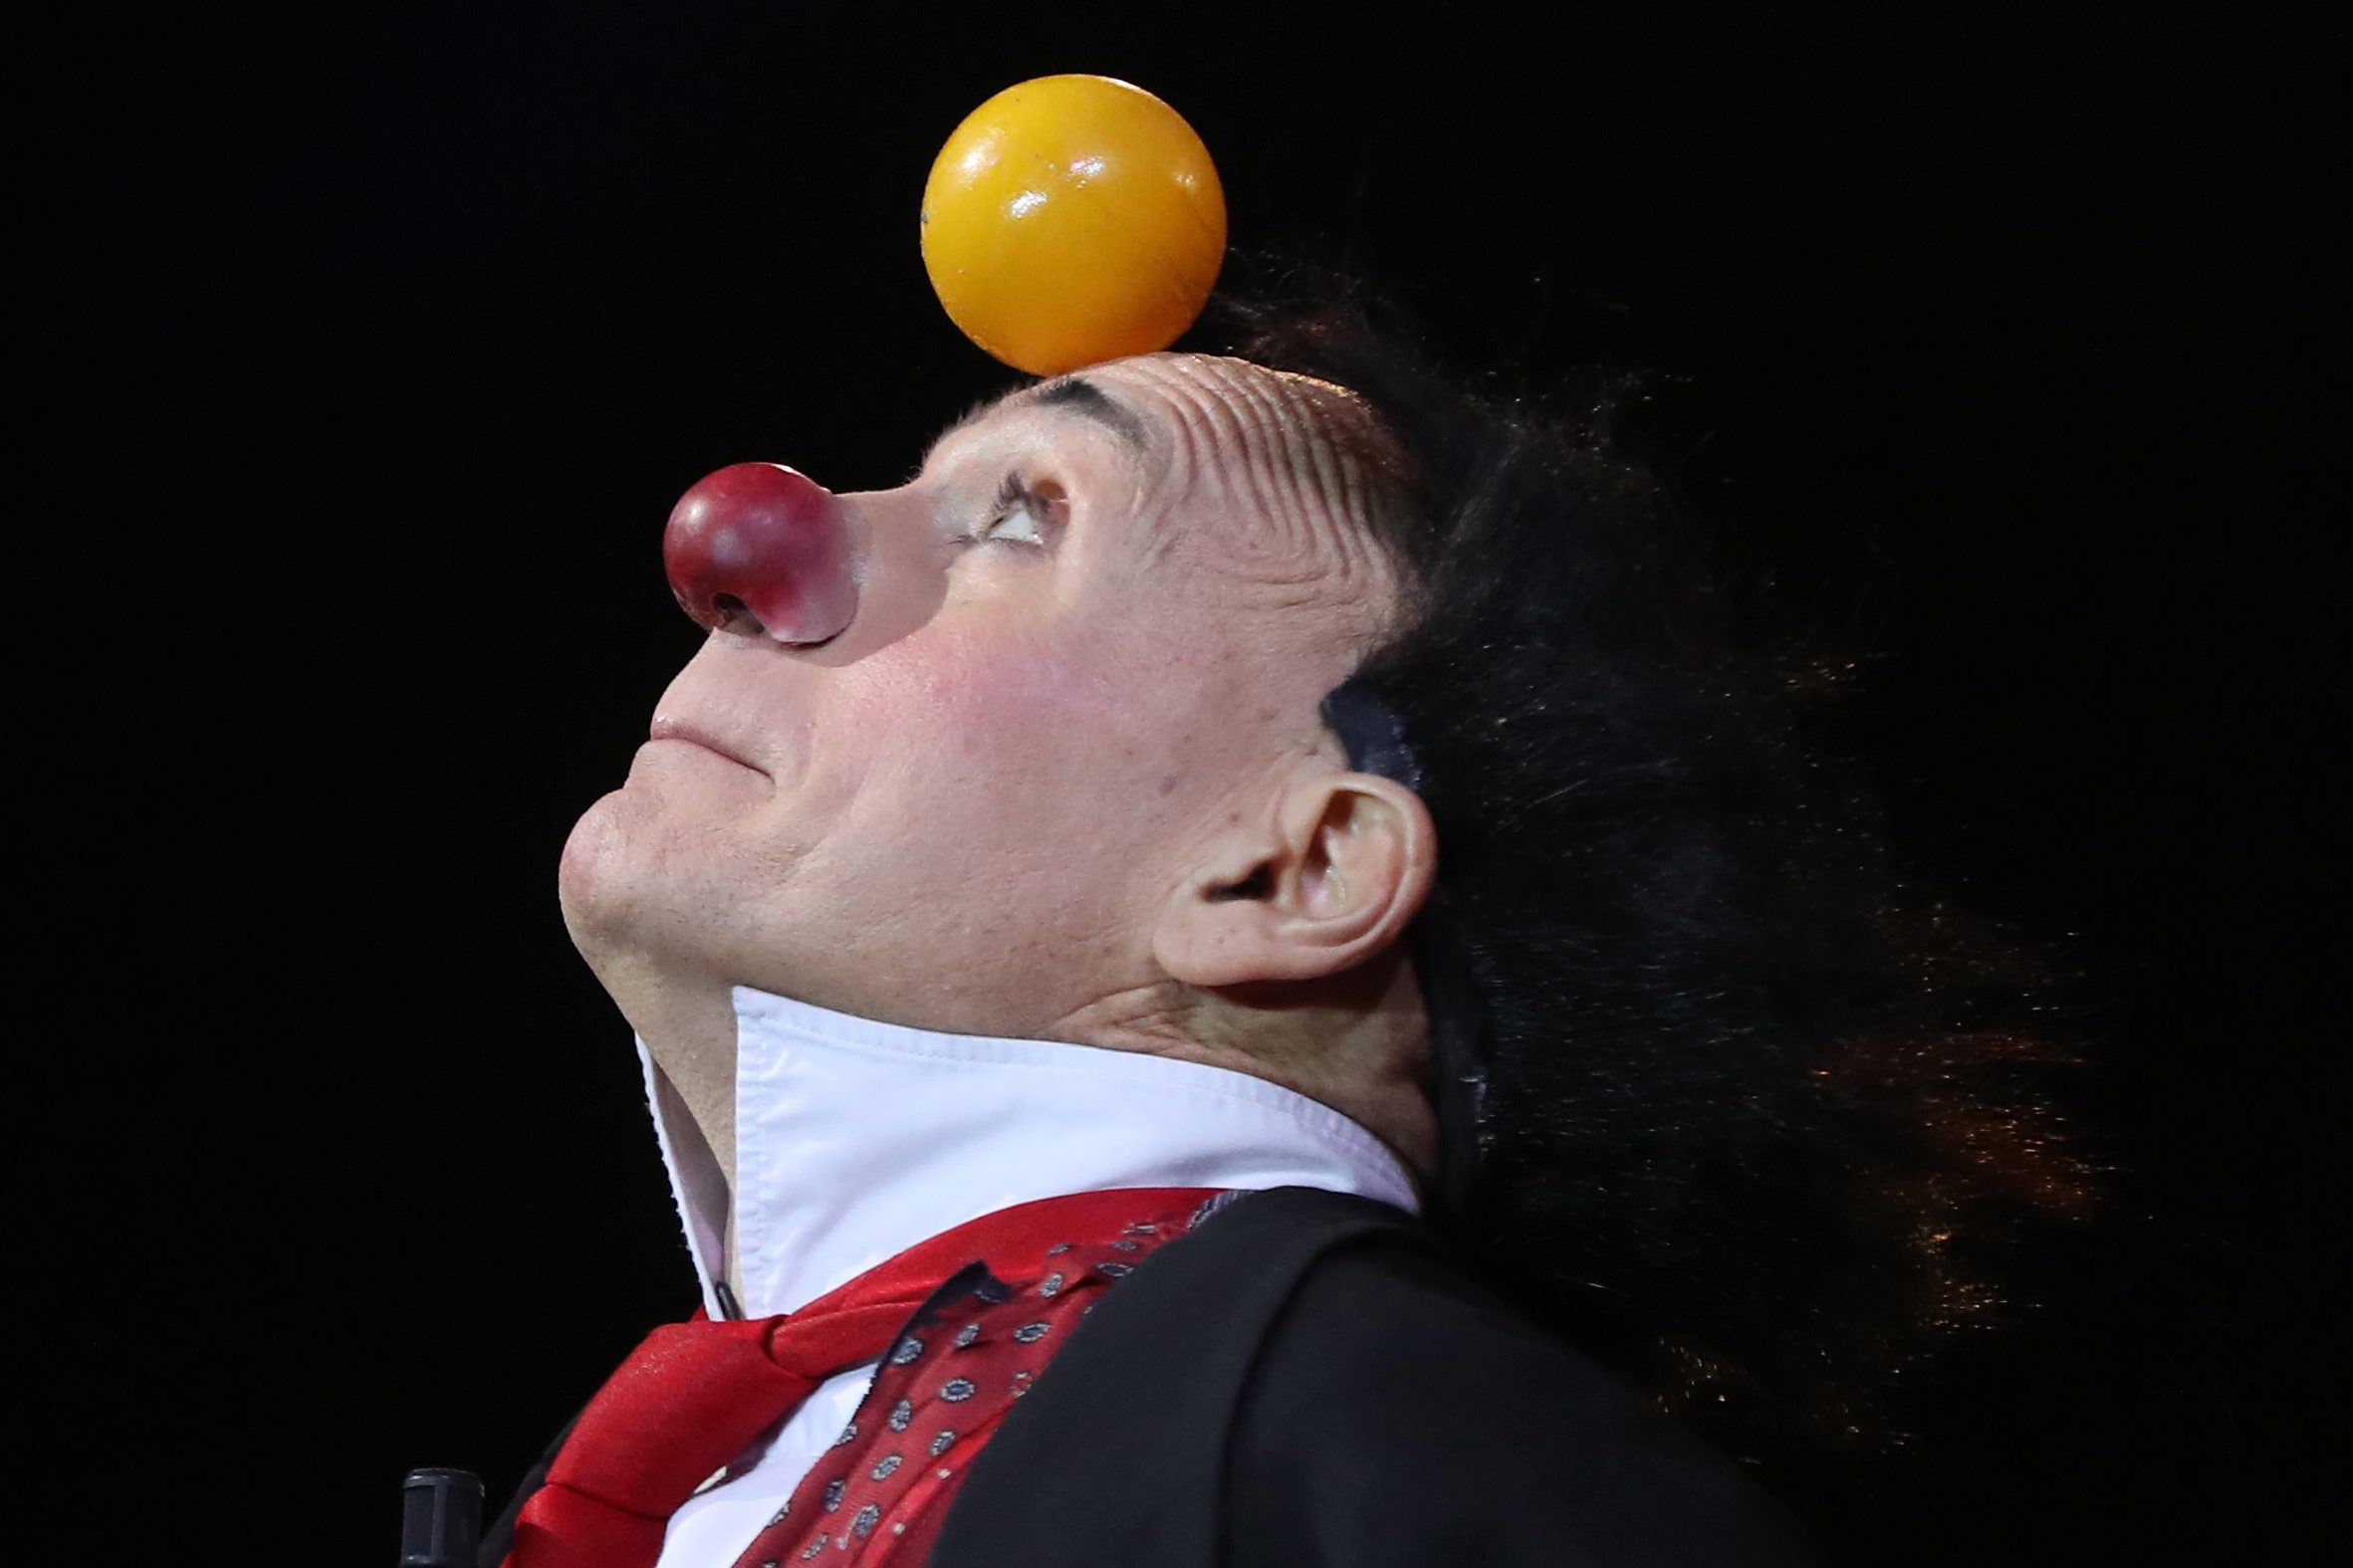 Повече от 120 циркови артисти от цял свят участват на Международния цирков фестивал в Монте Карло, който се провежда за 41-ви път. Фестивалът ежегодно привлича хиляди зрители, желаещи да видят уникалните изпълнения от някои от най-добрите треньори клоуни, жонгльори в света, съобщава Ruptly TV. Кралското семейство на Монако, които са известни с тяхната любов и подкрепа за цирково изкуство, също бяха сред присъстващите на голямото събитие във вторник (24 януари).